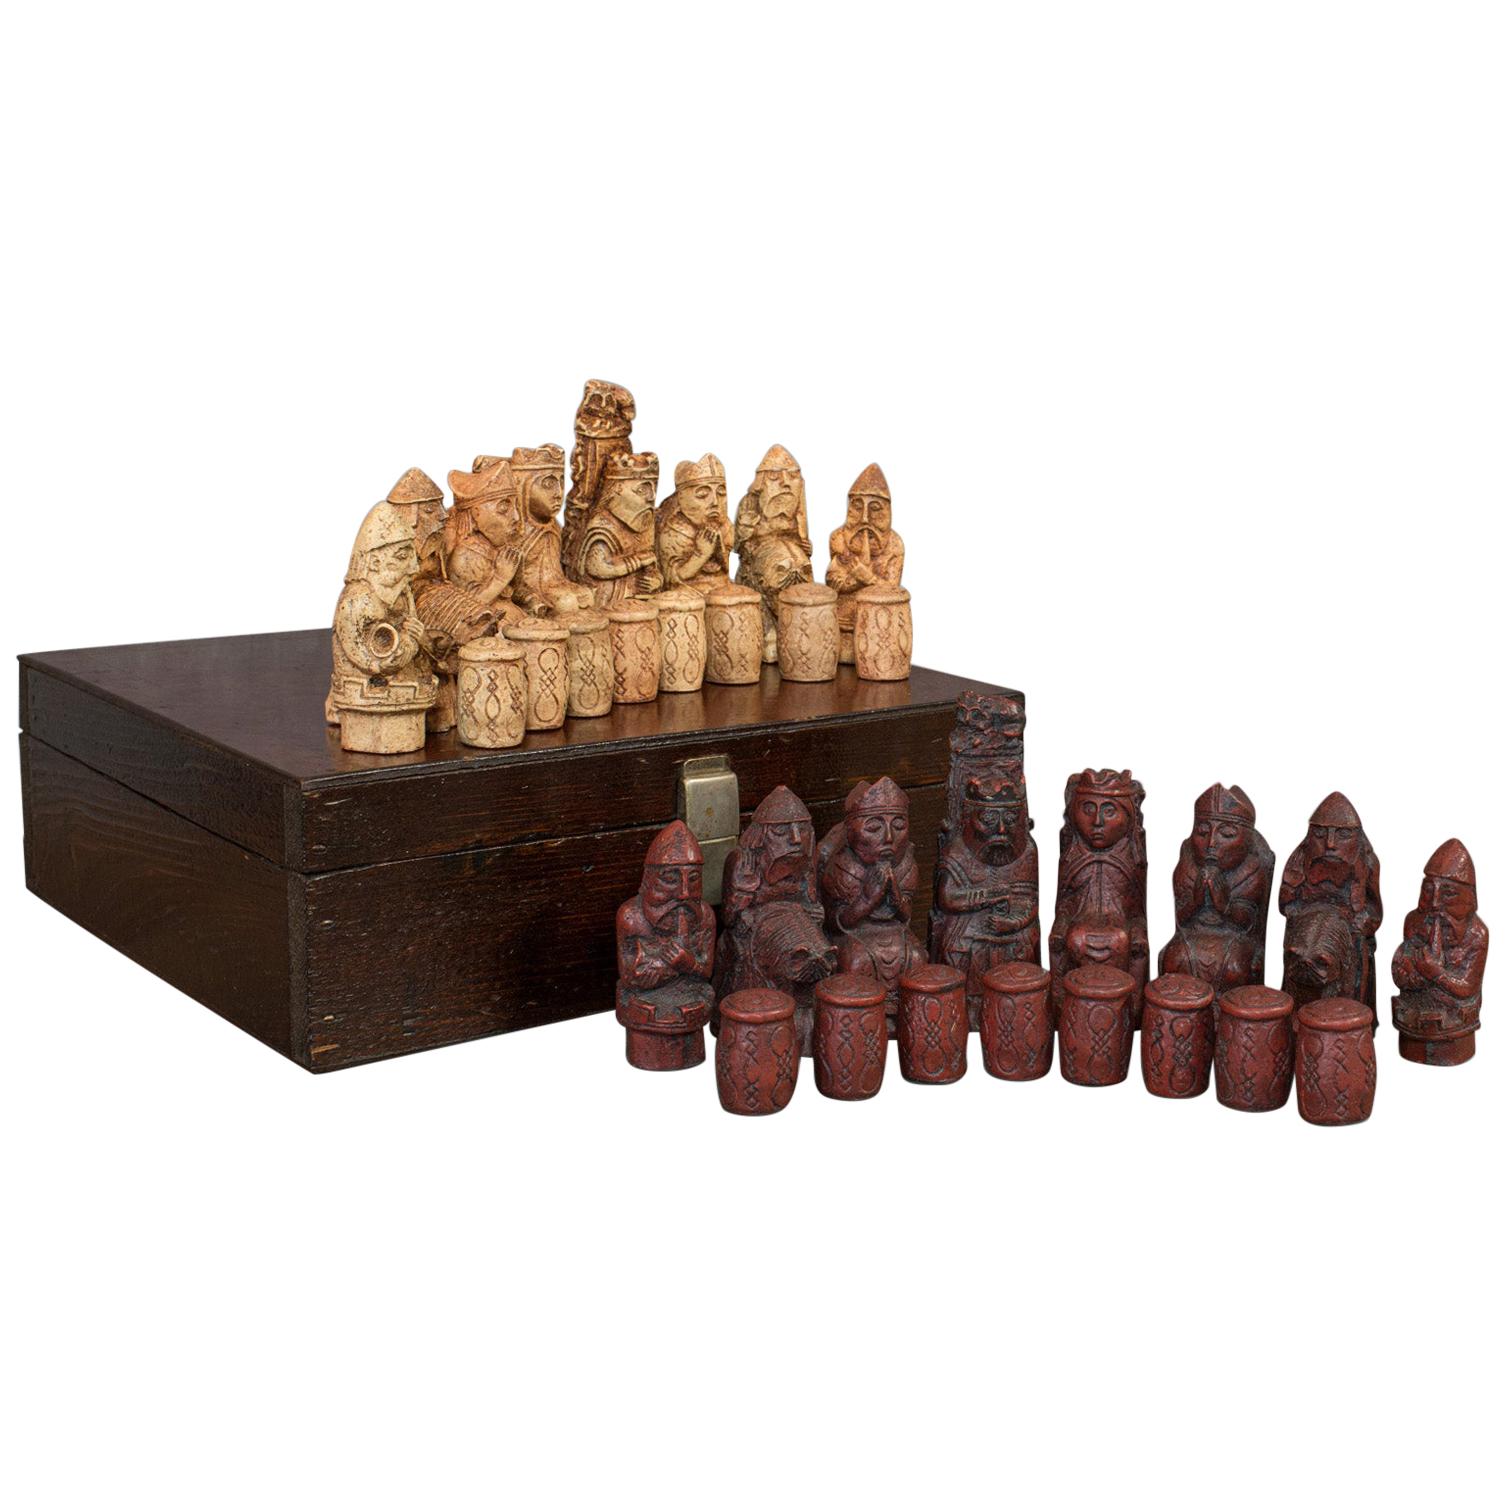 Vintage Chess Set English, Stone Resin, Gaming, Pieces, Gothic Taste, circa 1990